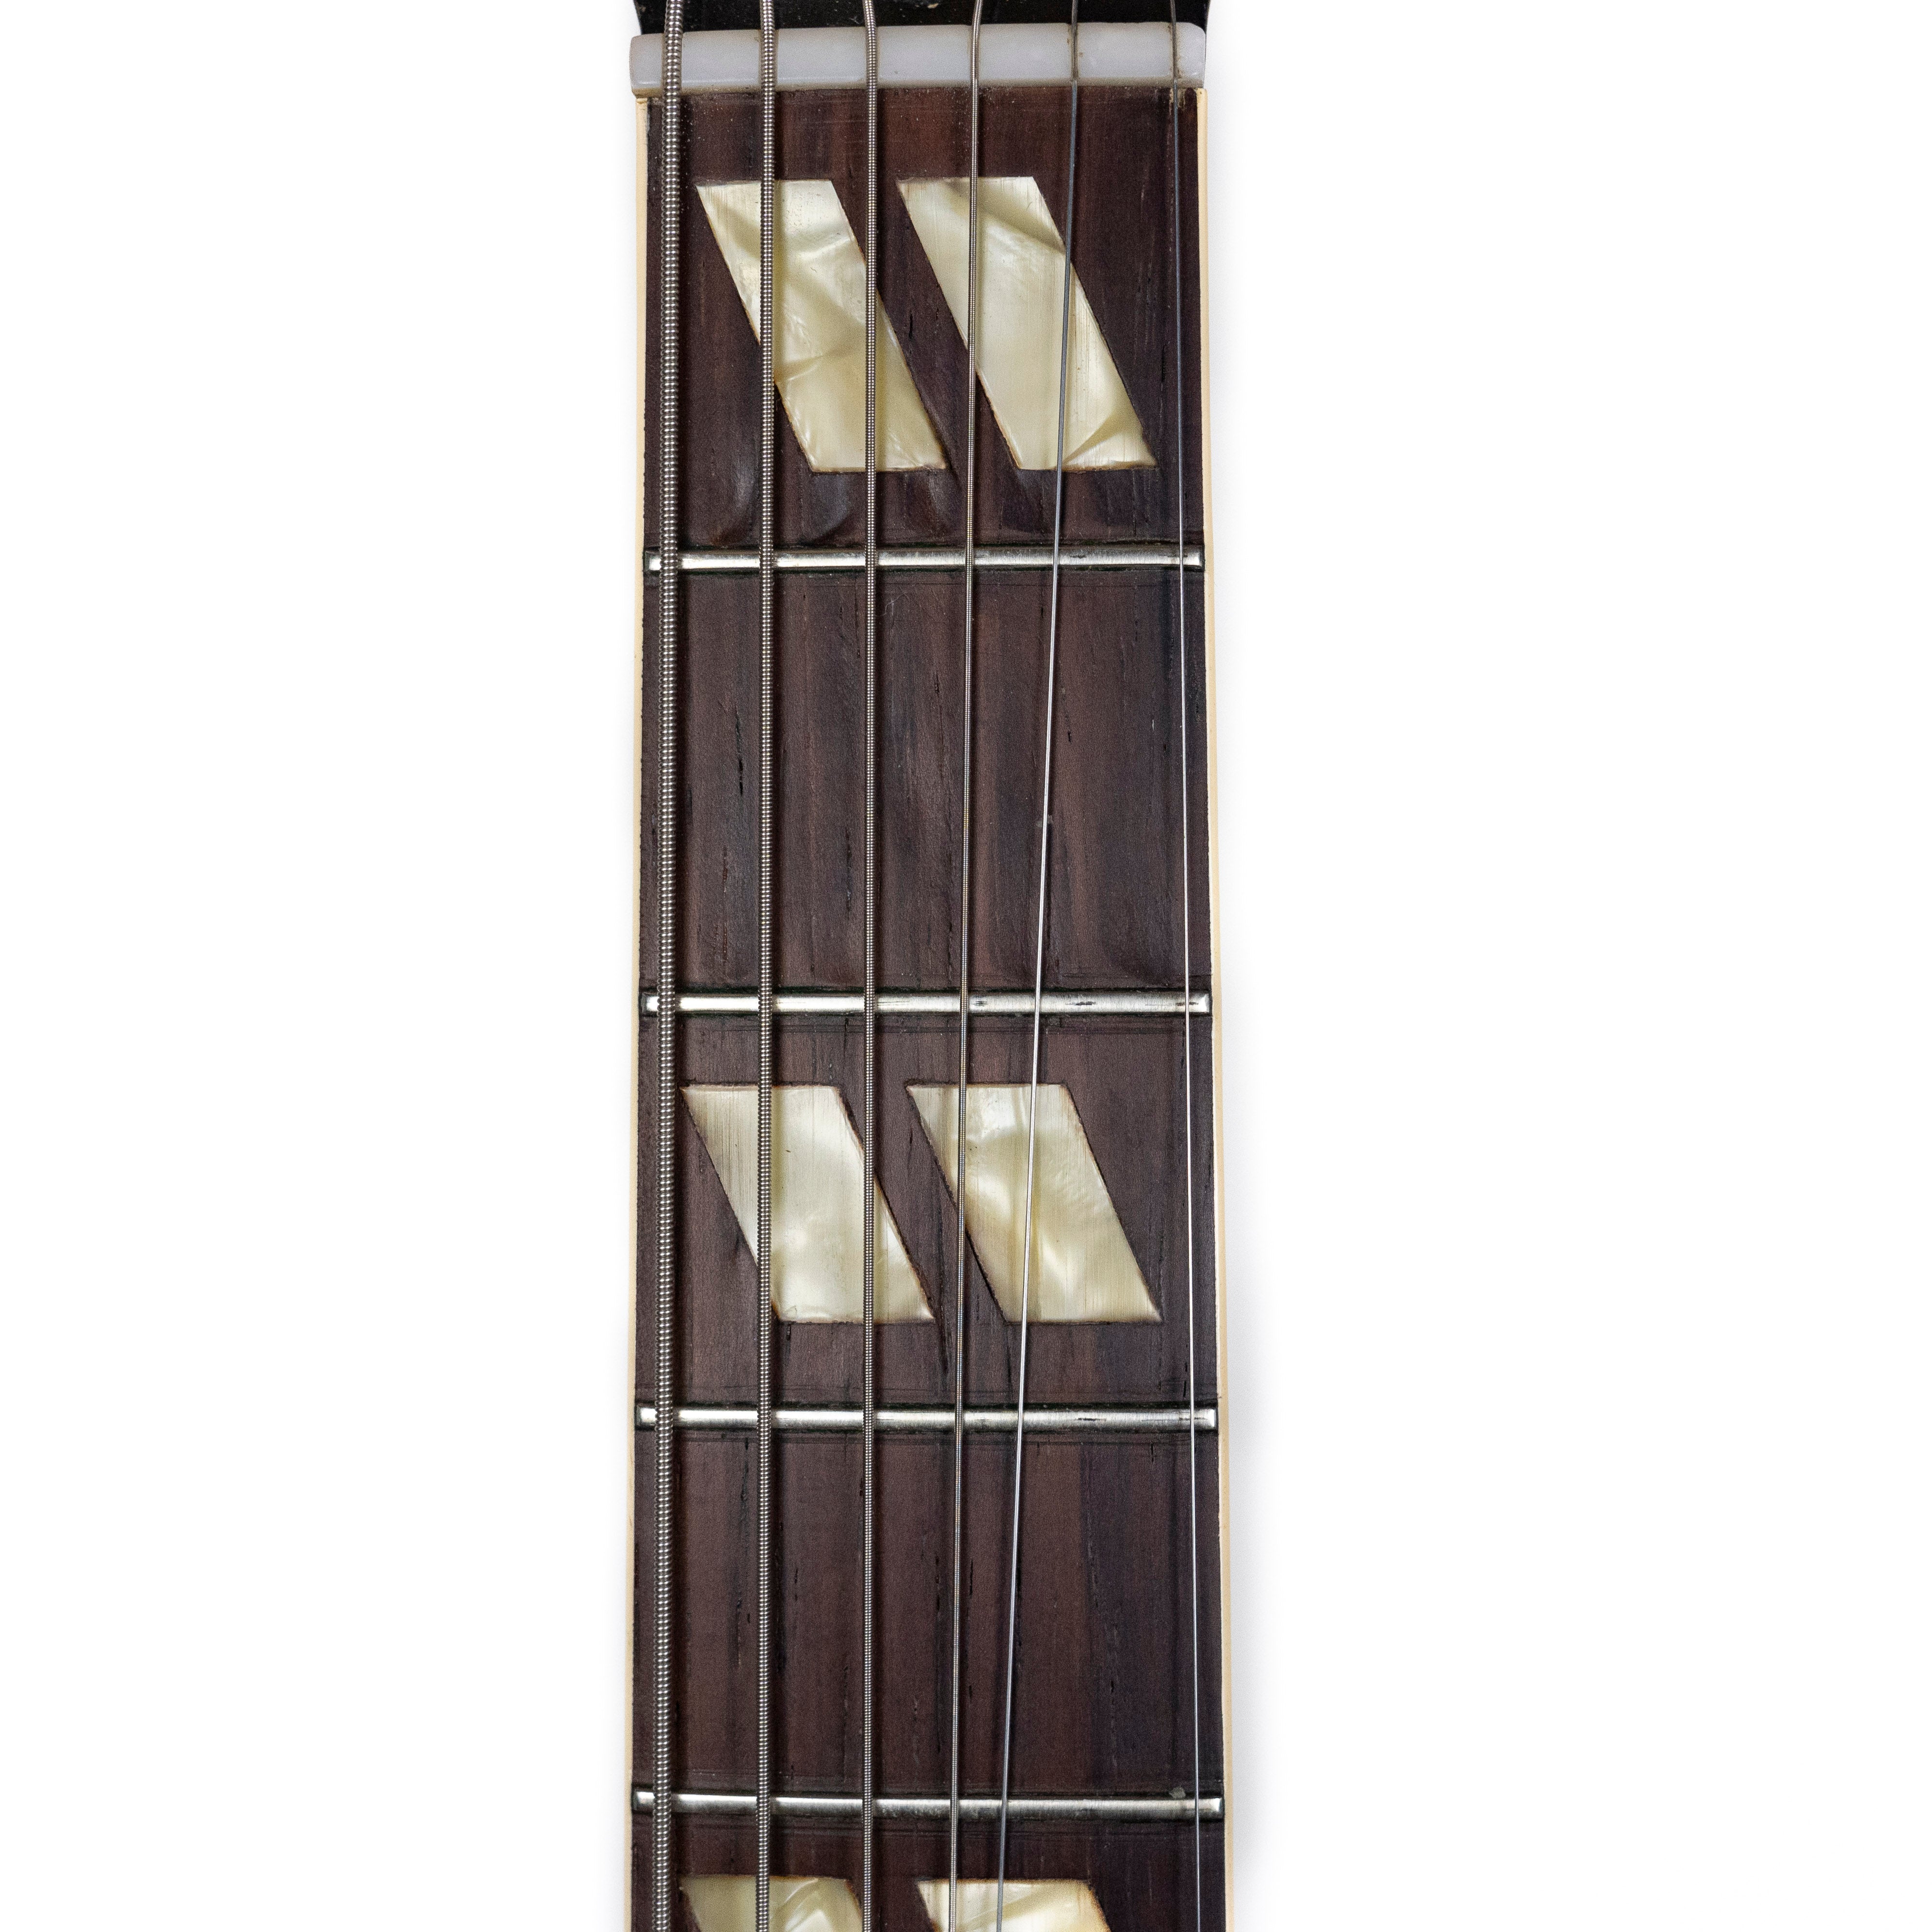 Gibson 1952/53 ES-175 Sunburst